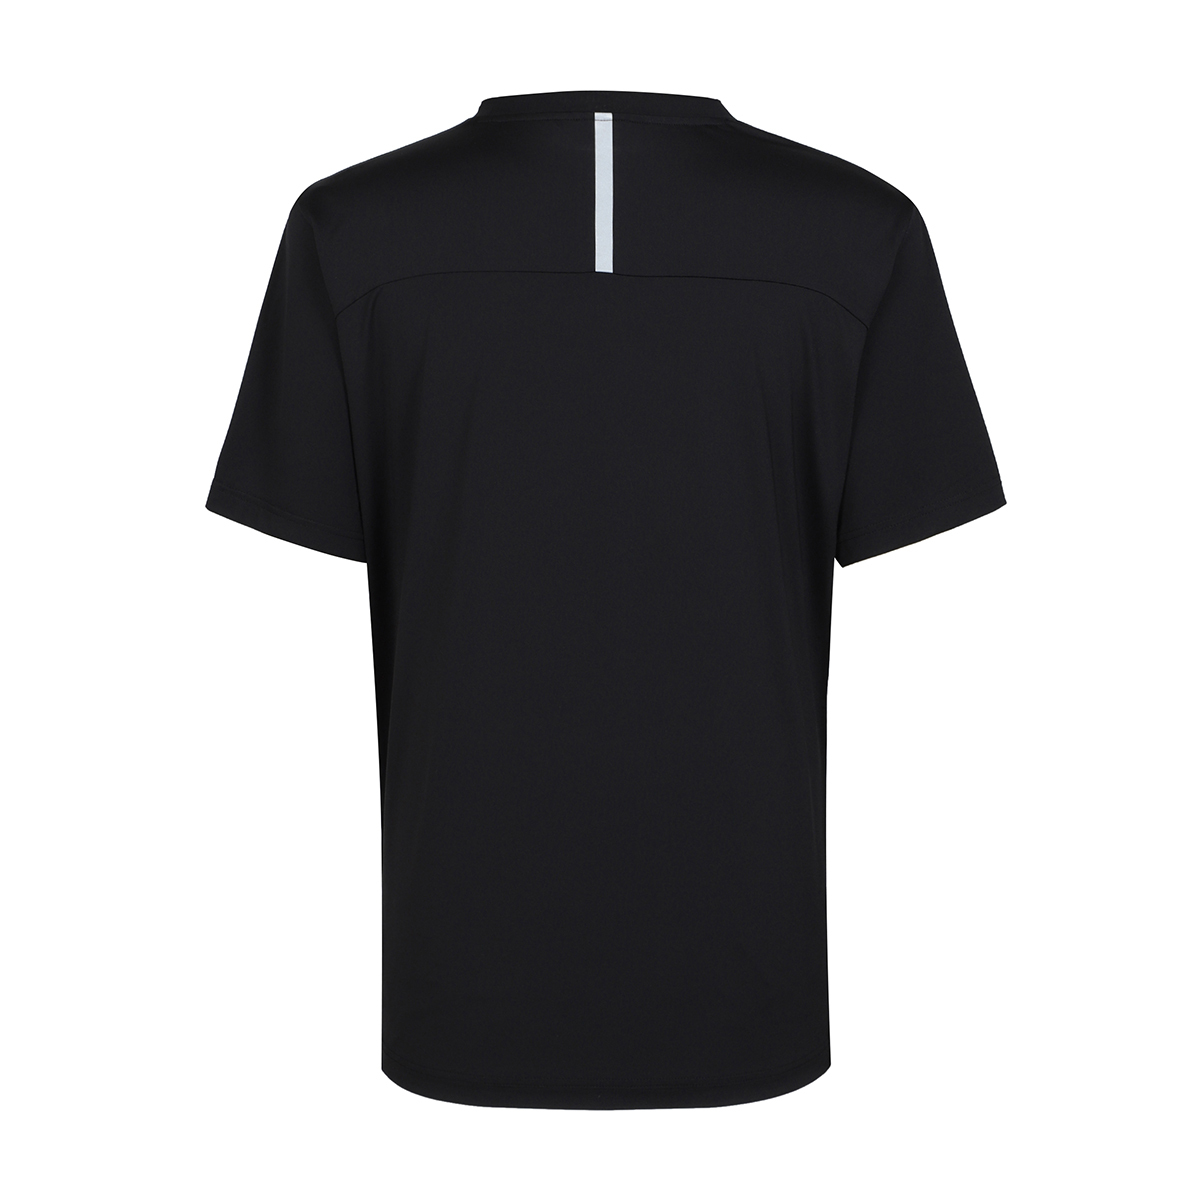 휠라 골프 남성 반소매 티셔츠 - 블랙(레터링)